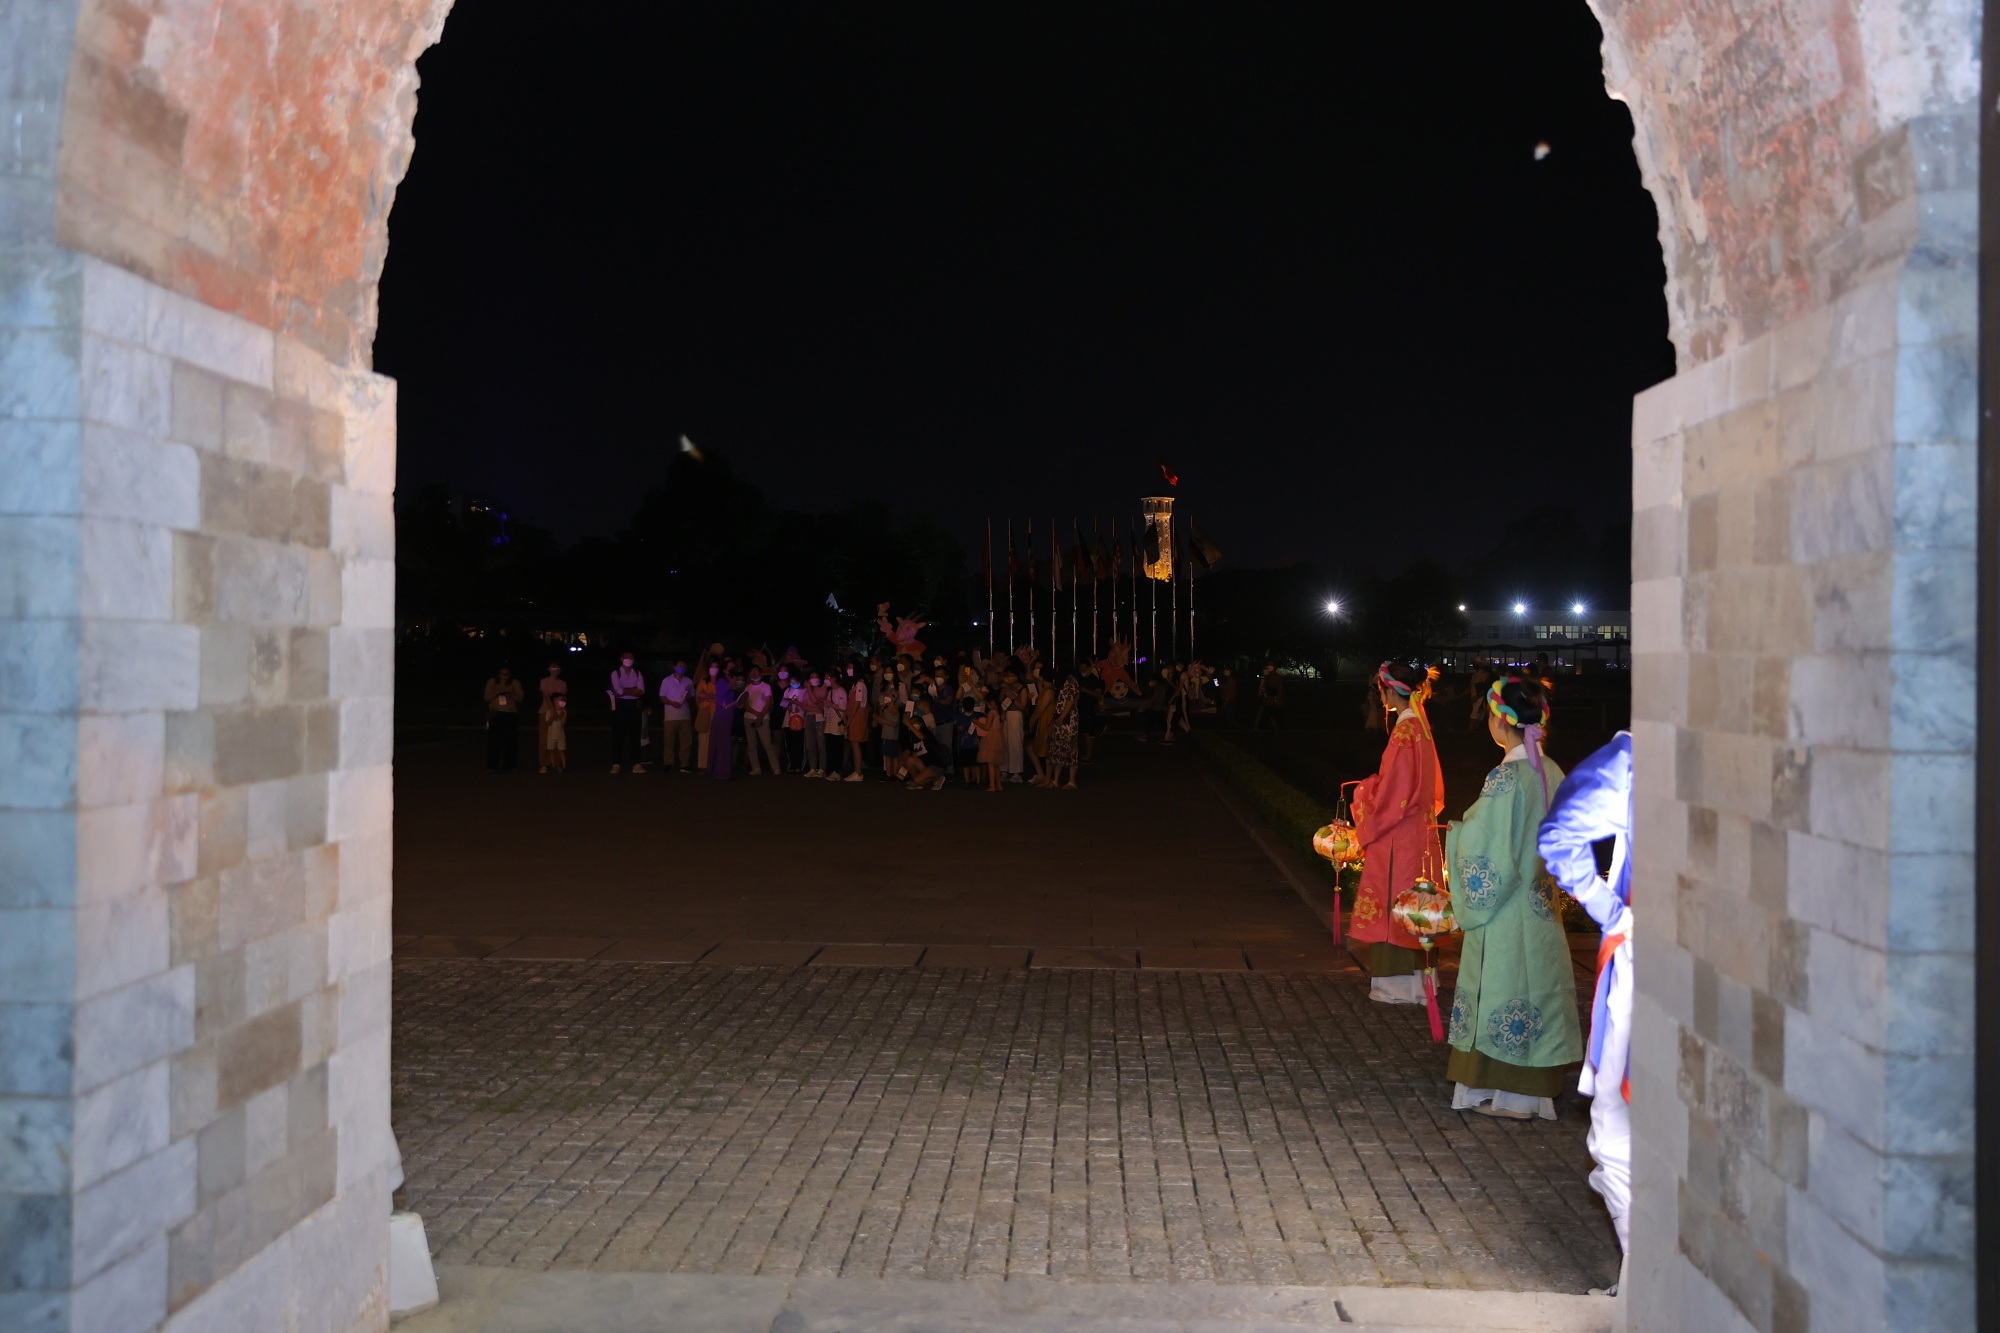 Lộng lẫy đêm hoàng cung tại Hoàng thành Thăng Long - 5